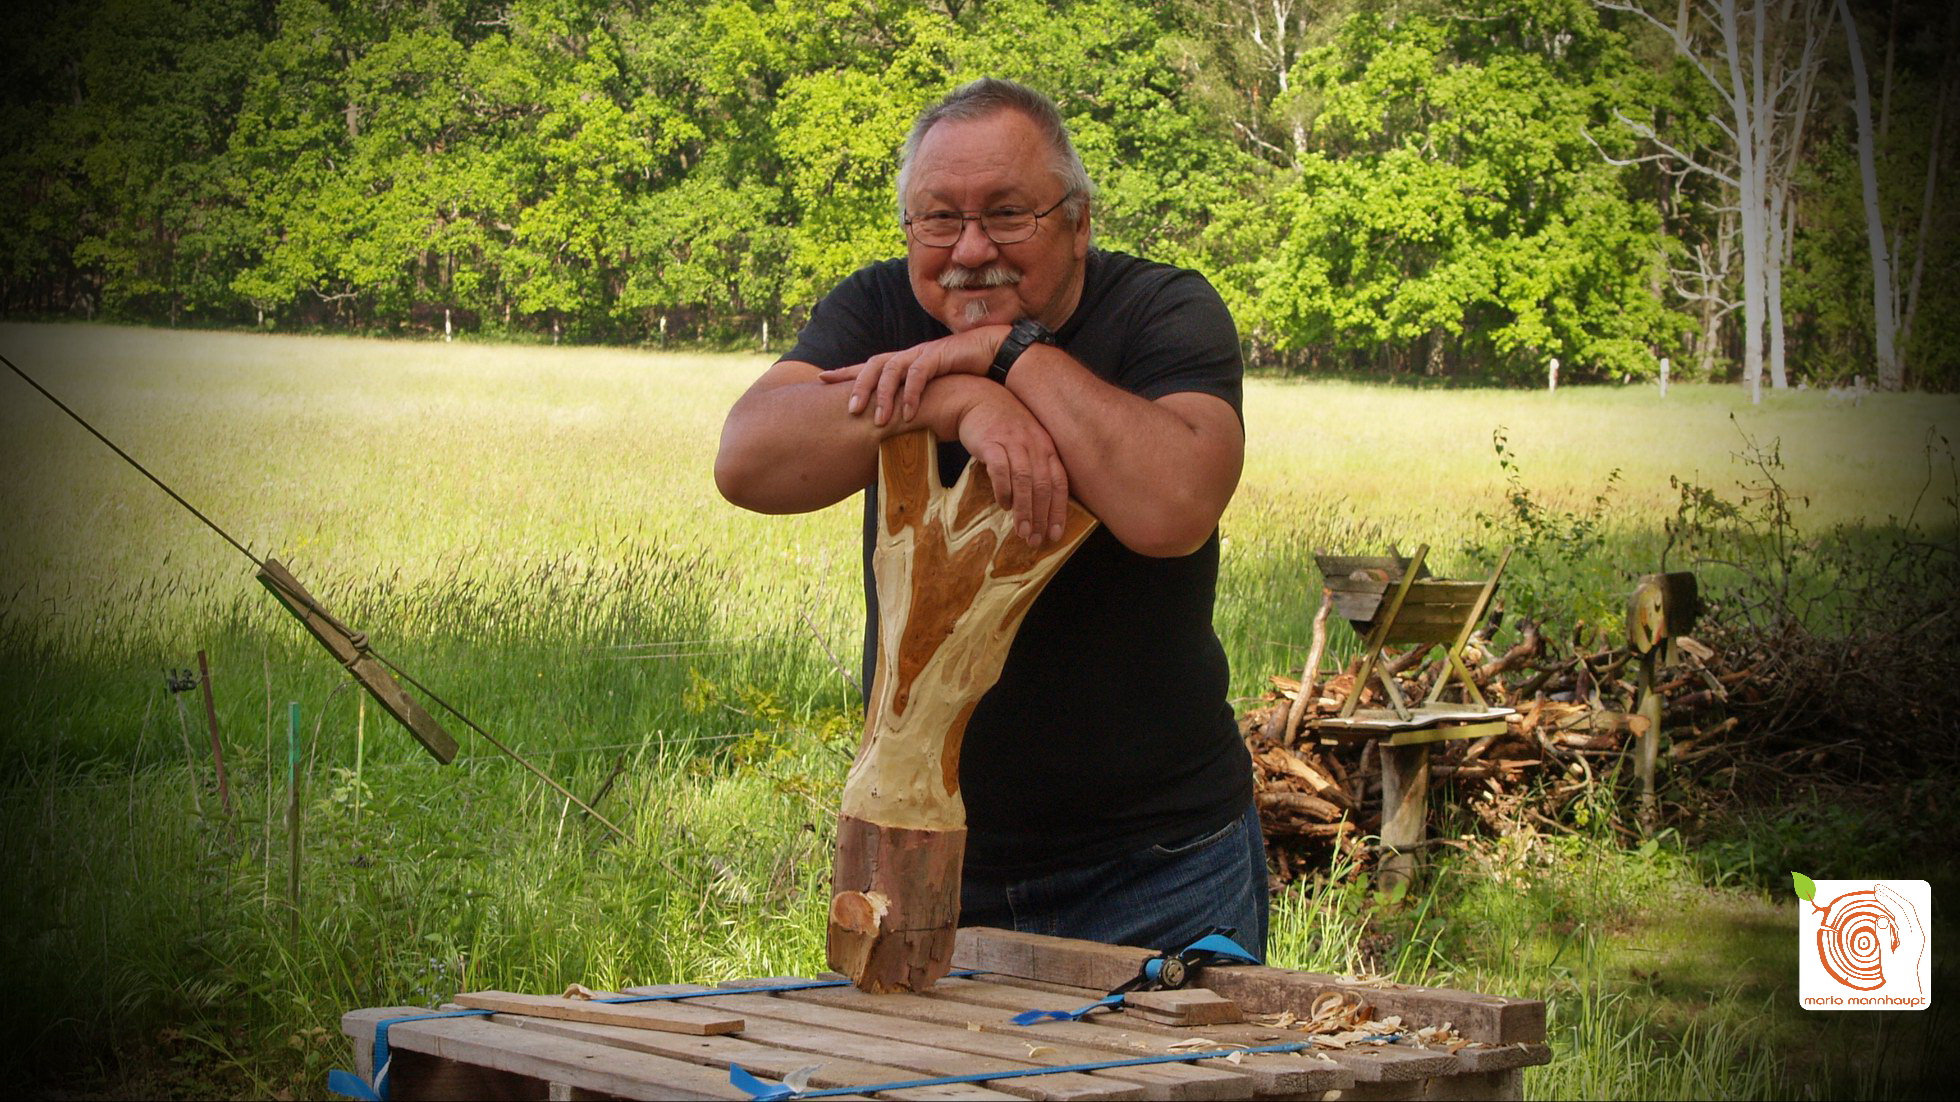 Erlebe deinen Workshop - kreativ mit Holz!